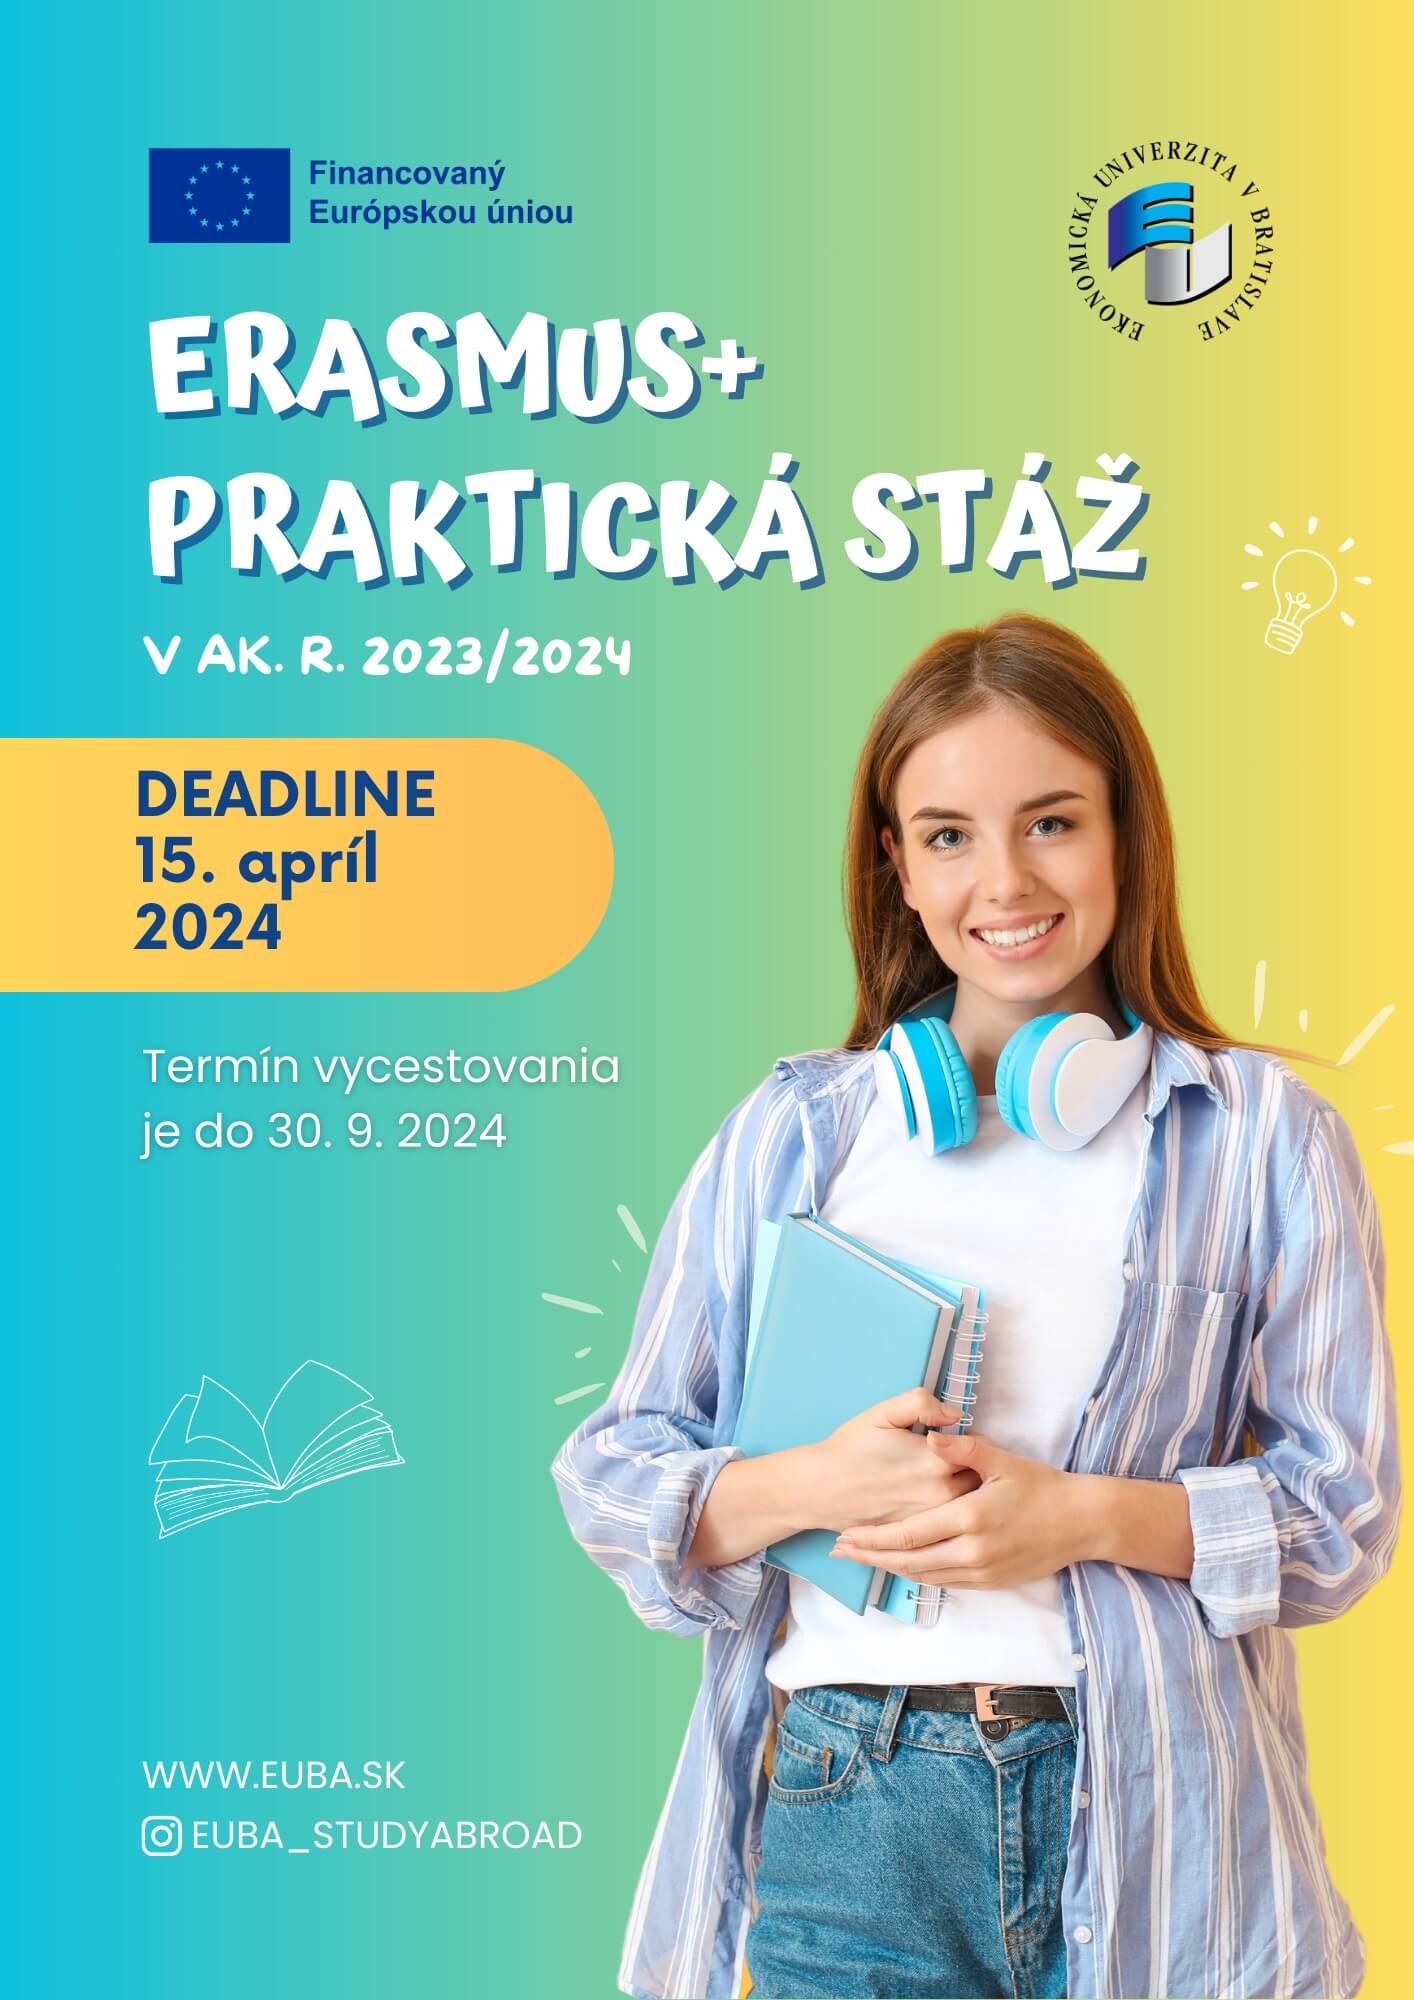 Erasmus+ praktická stáž